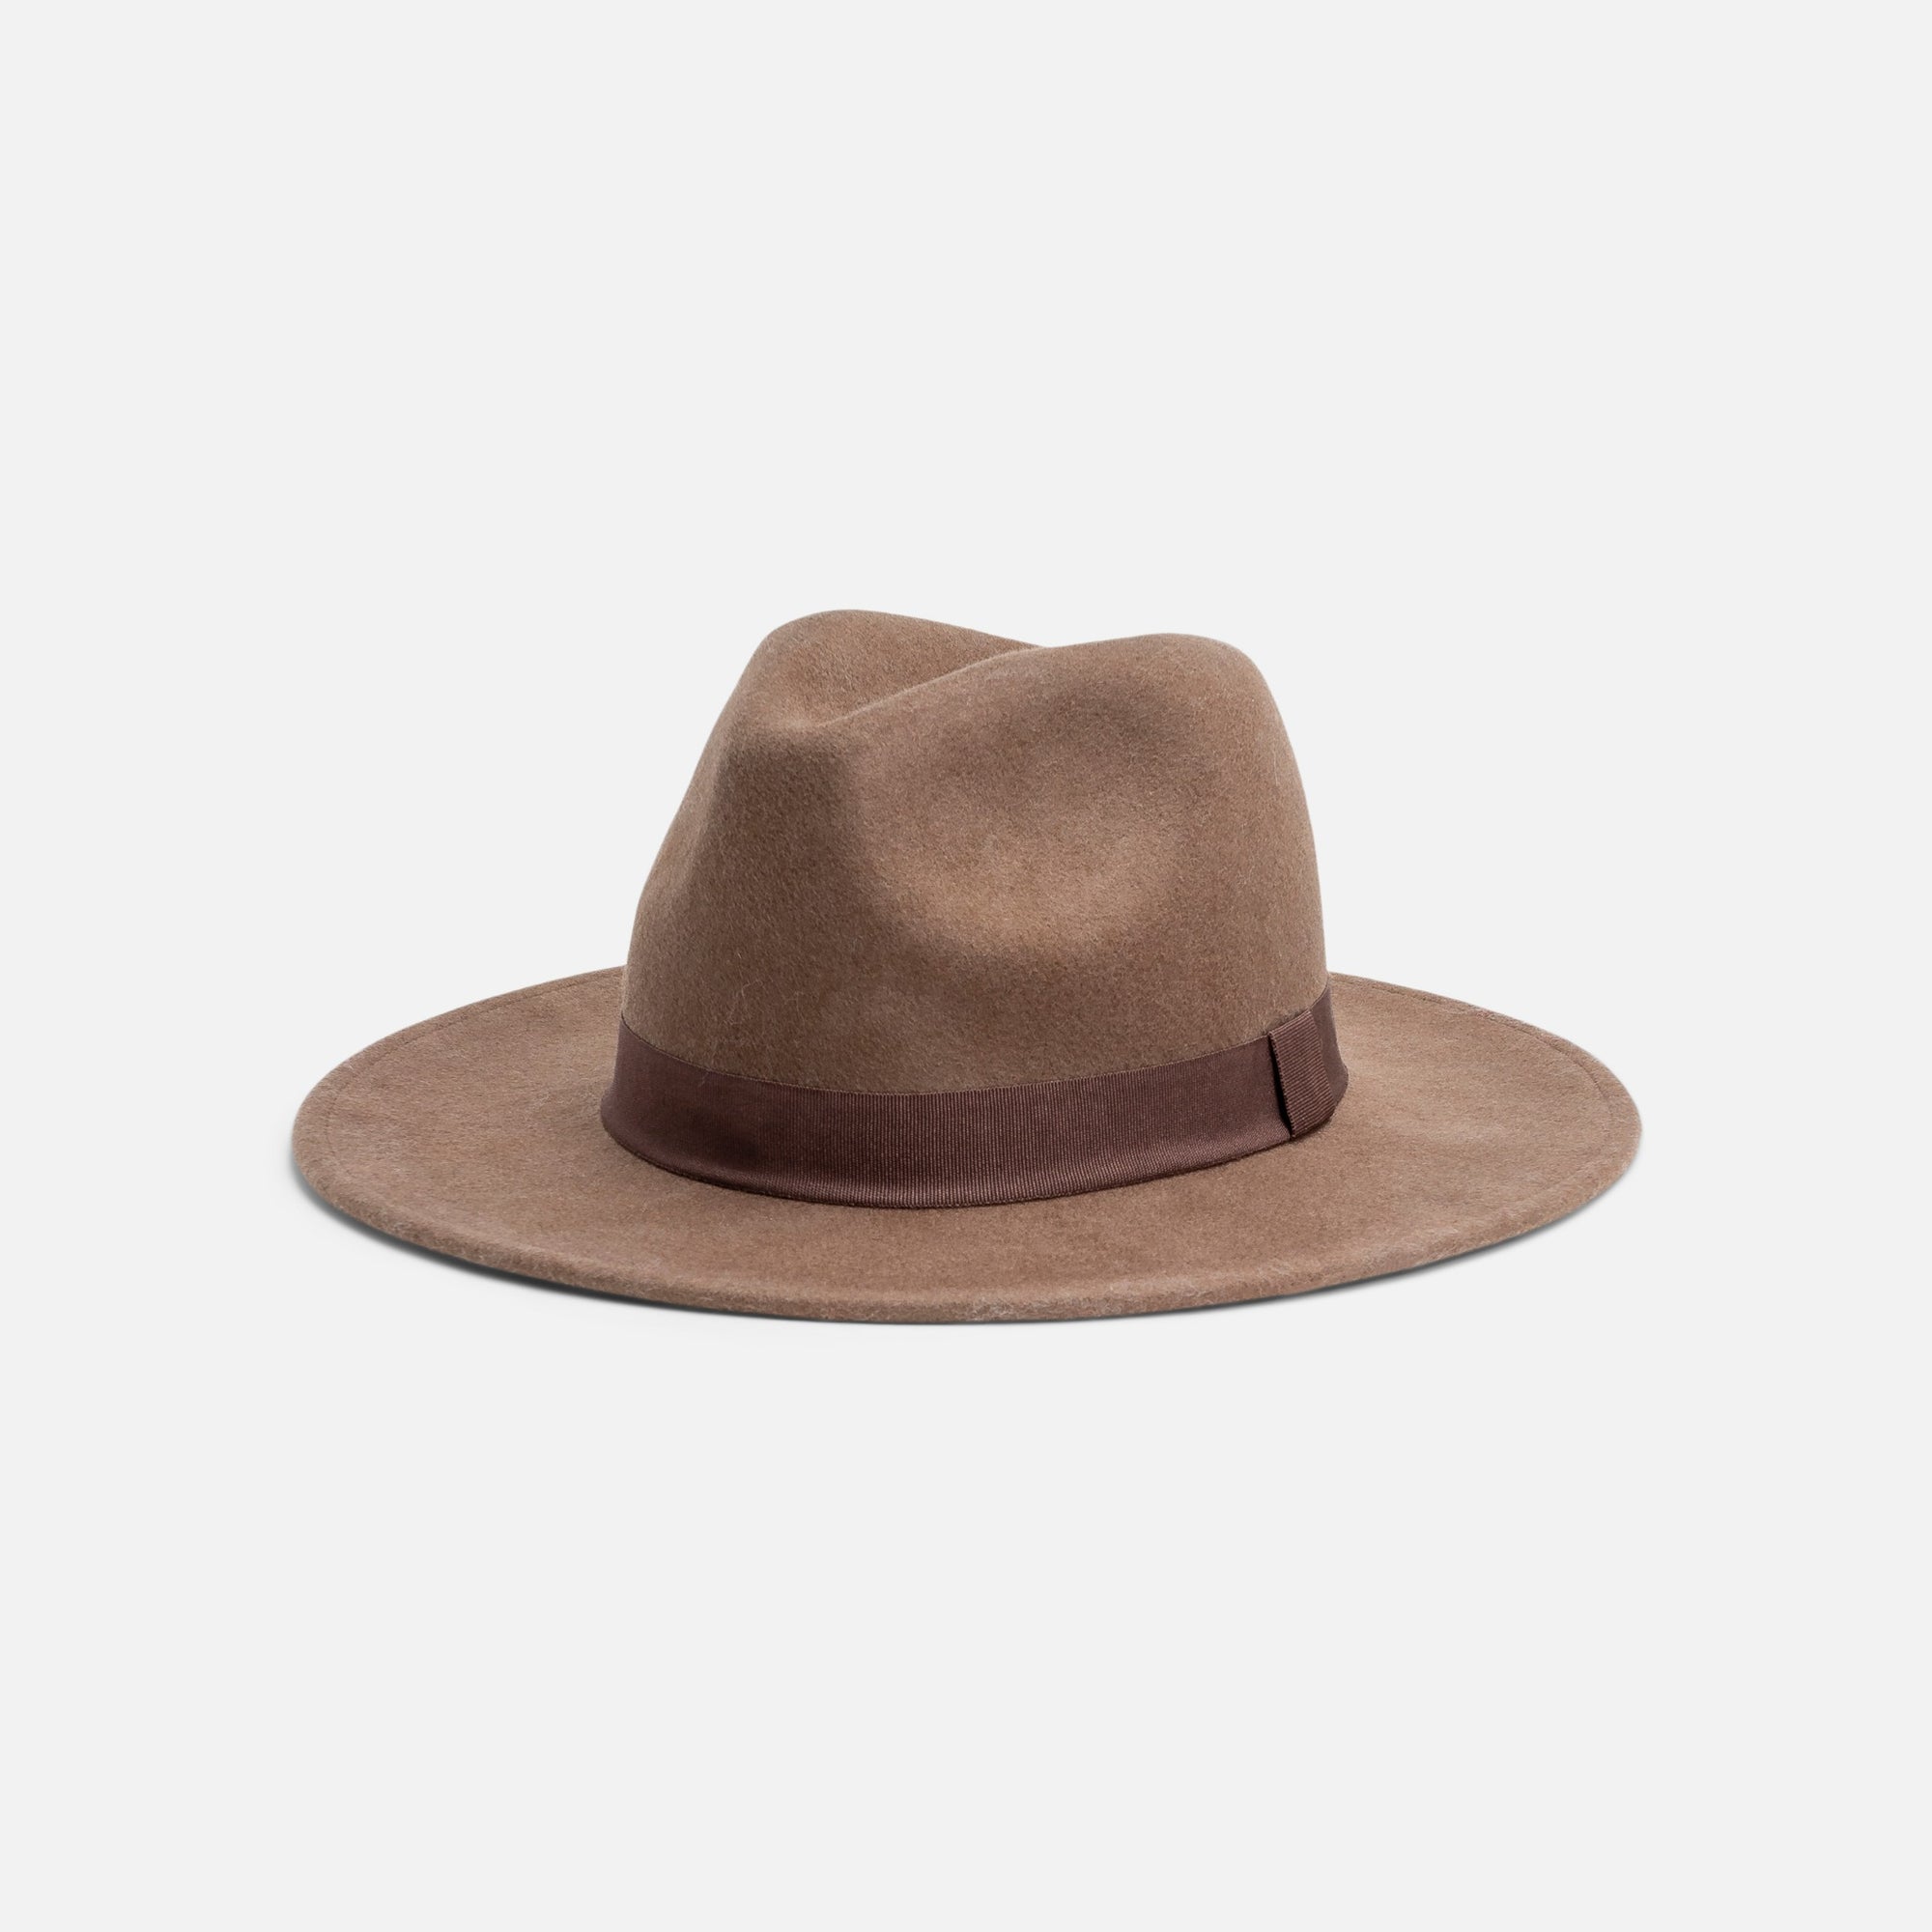 Chestnut brown fedora felt hat with dark brown band